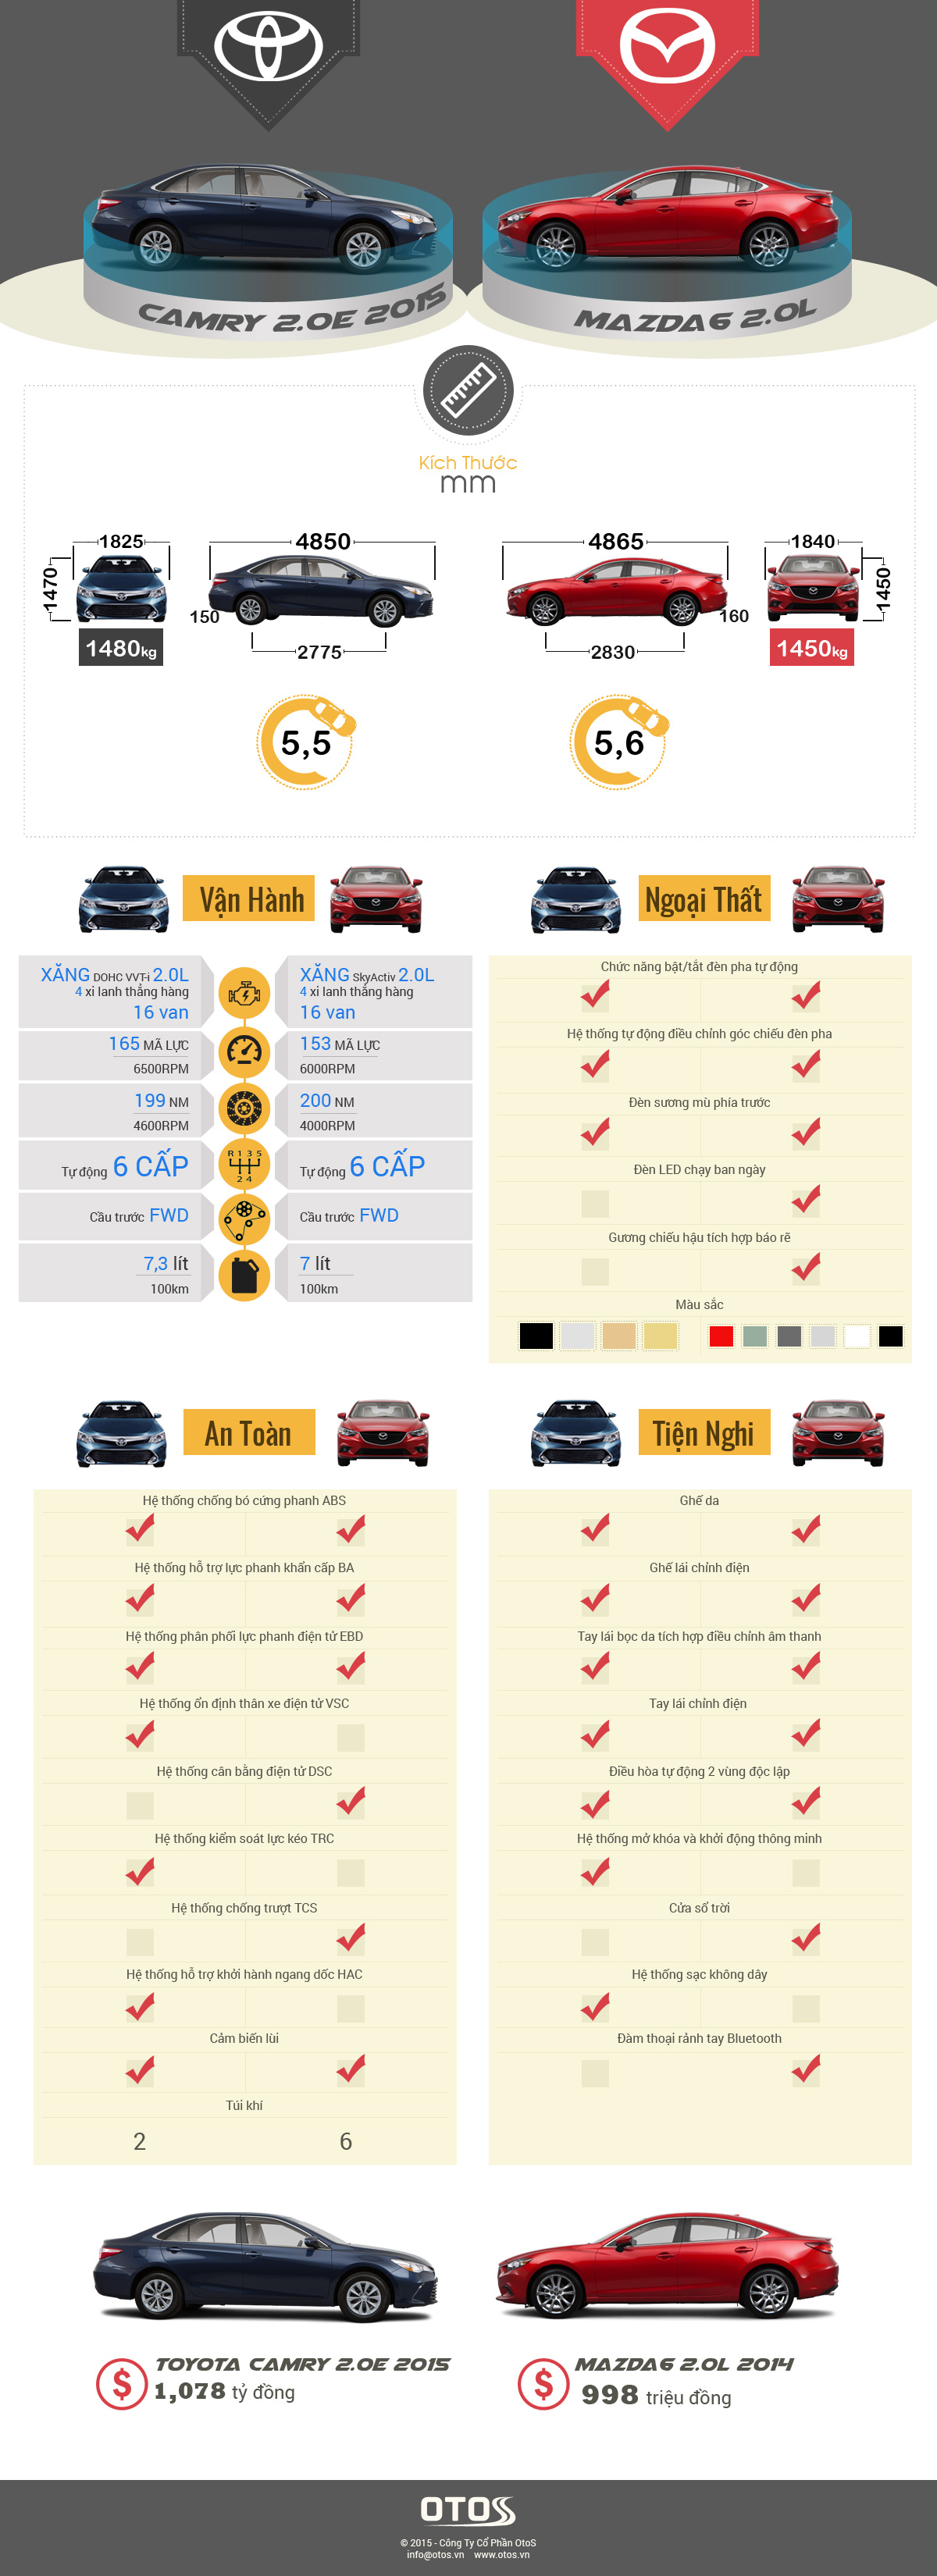 Infographic - Toyota Camry 2015 và Mazda6: Lựa chọn nào hoàn hảo nhất?